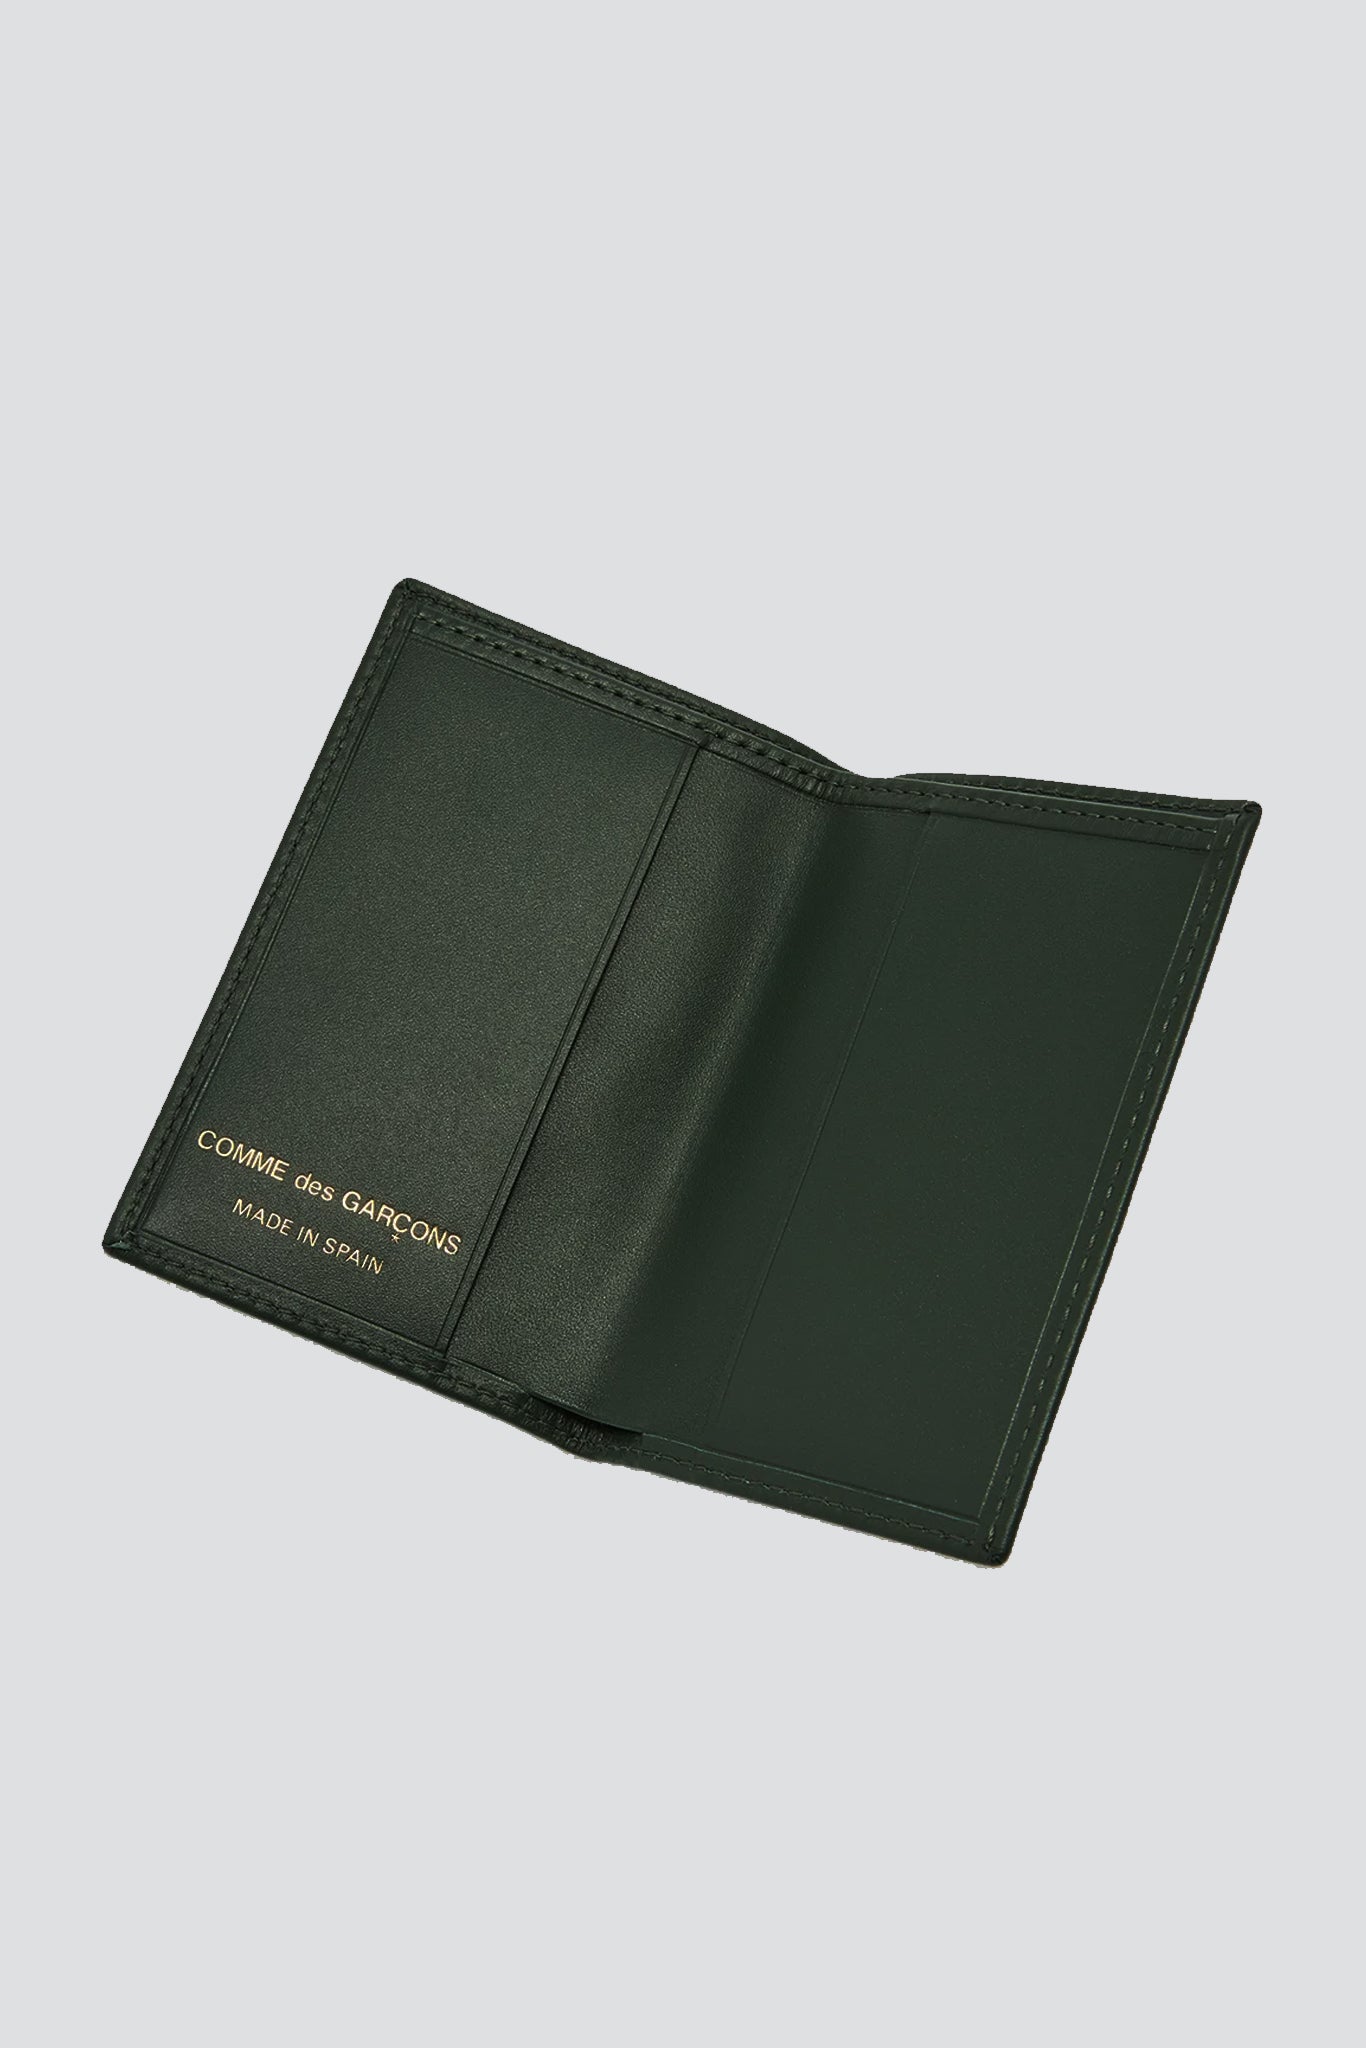 Leather Bi-Fold Wallet - Bottle Green - SA6400